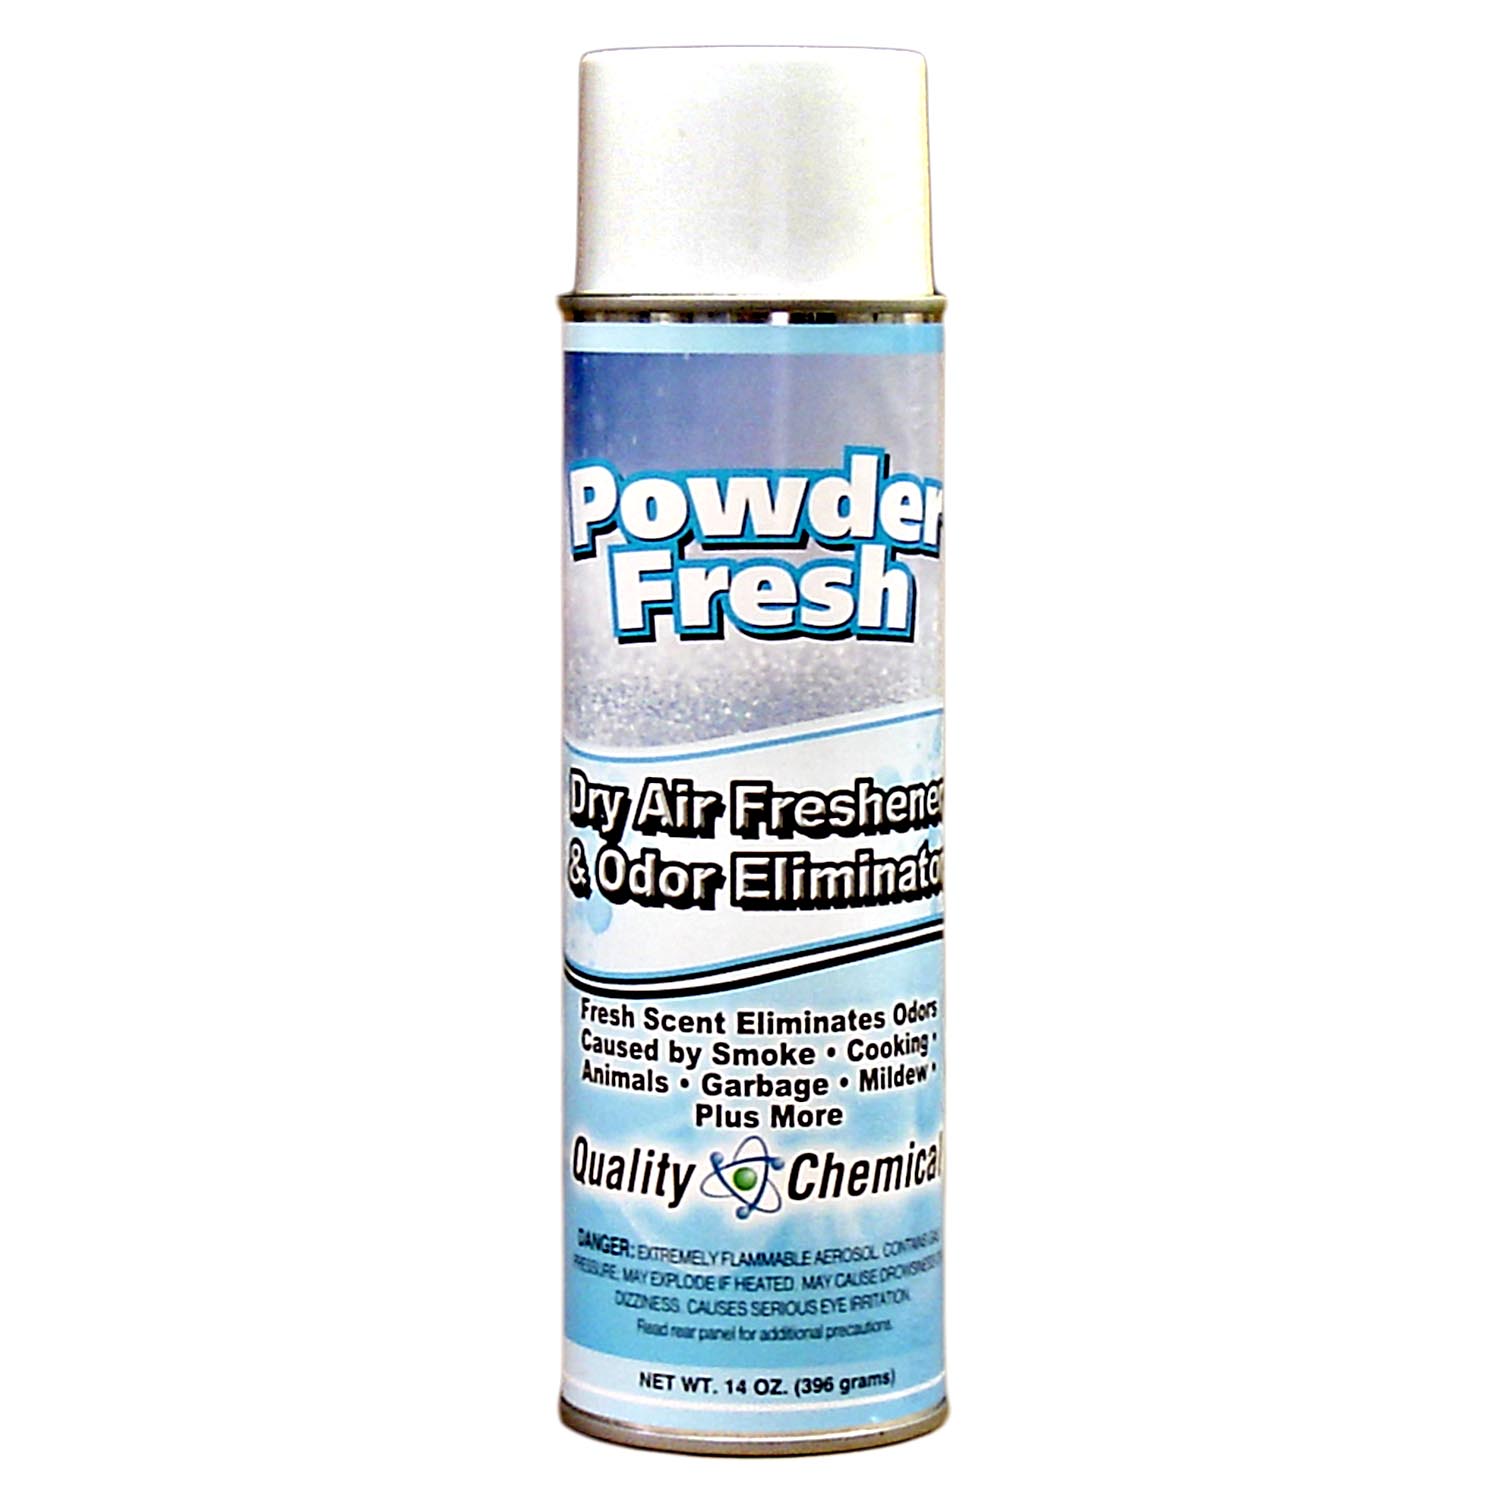 Powder Fresh Deodorizer